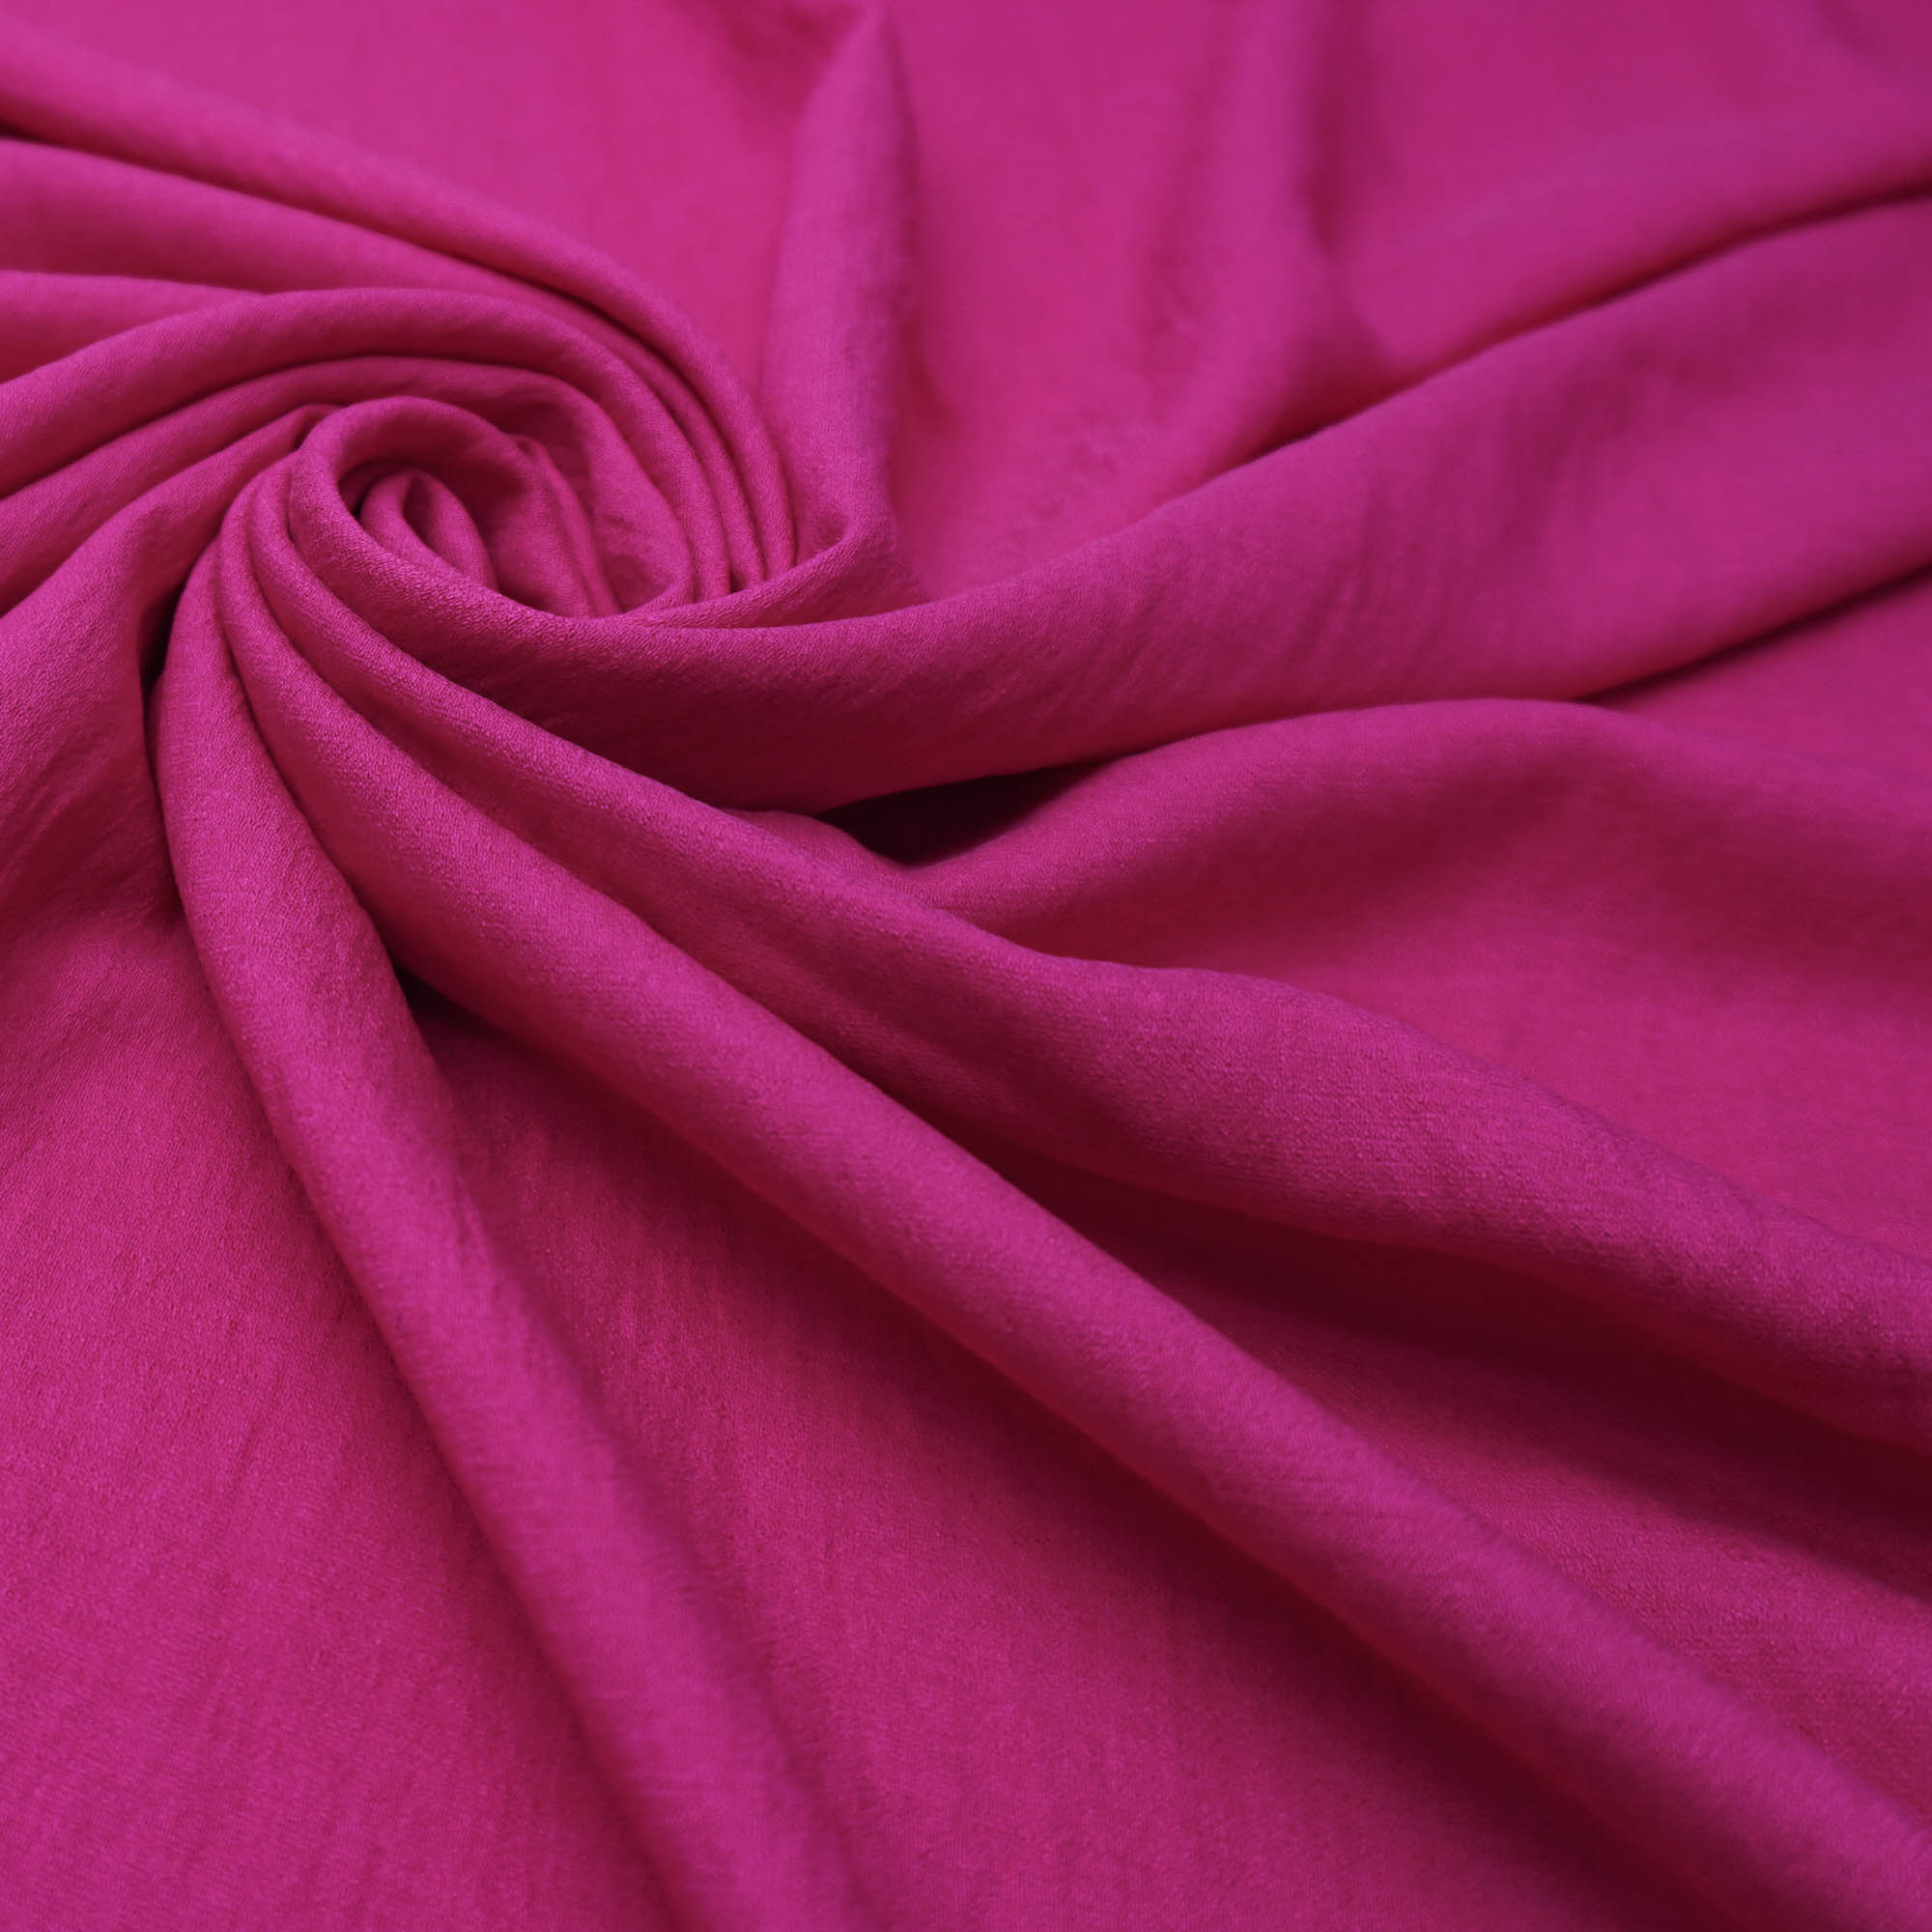 Tecido viscose twill textura de linho pink